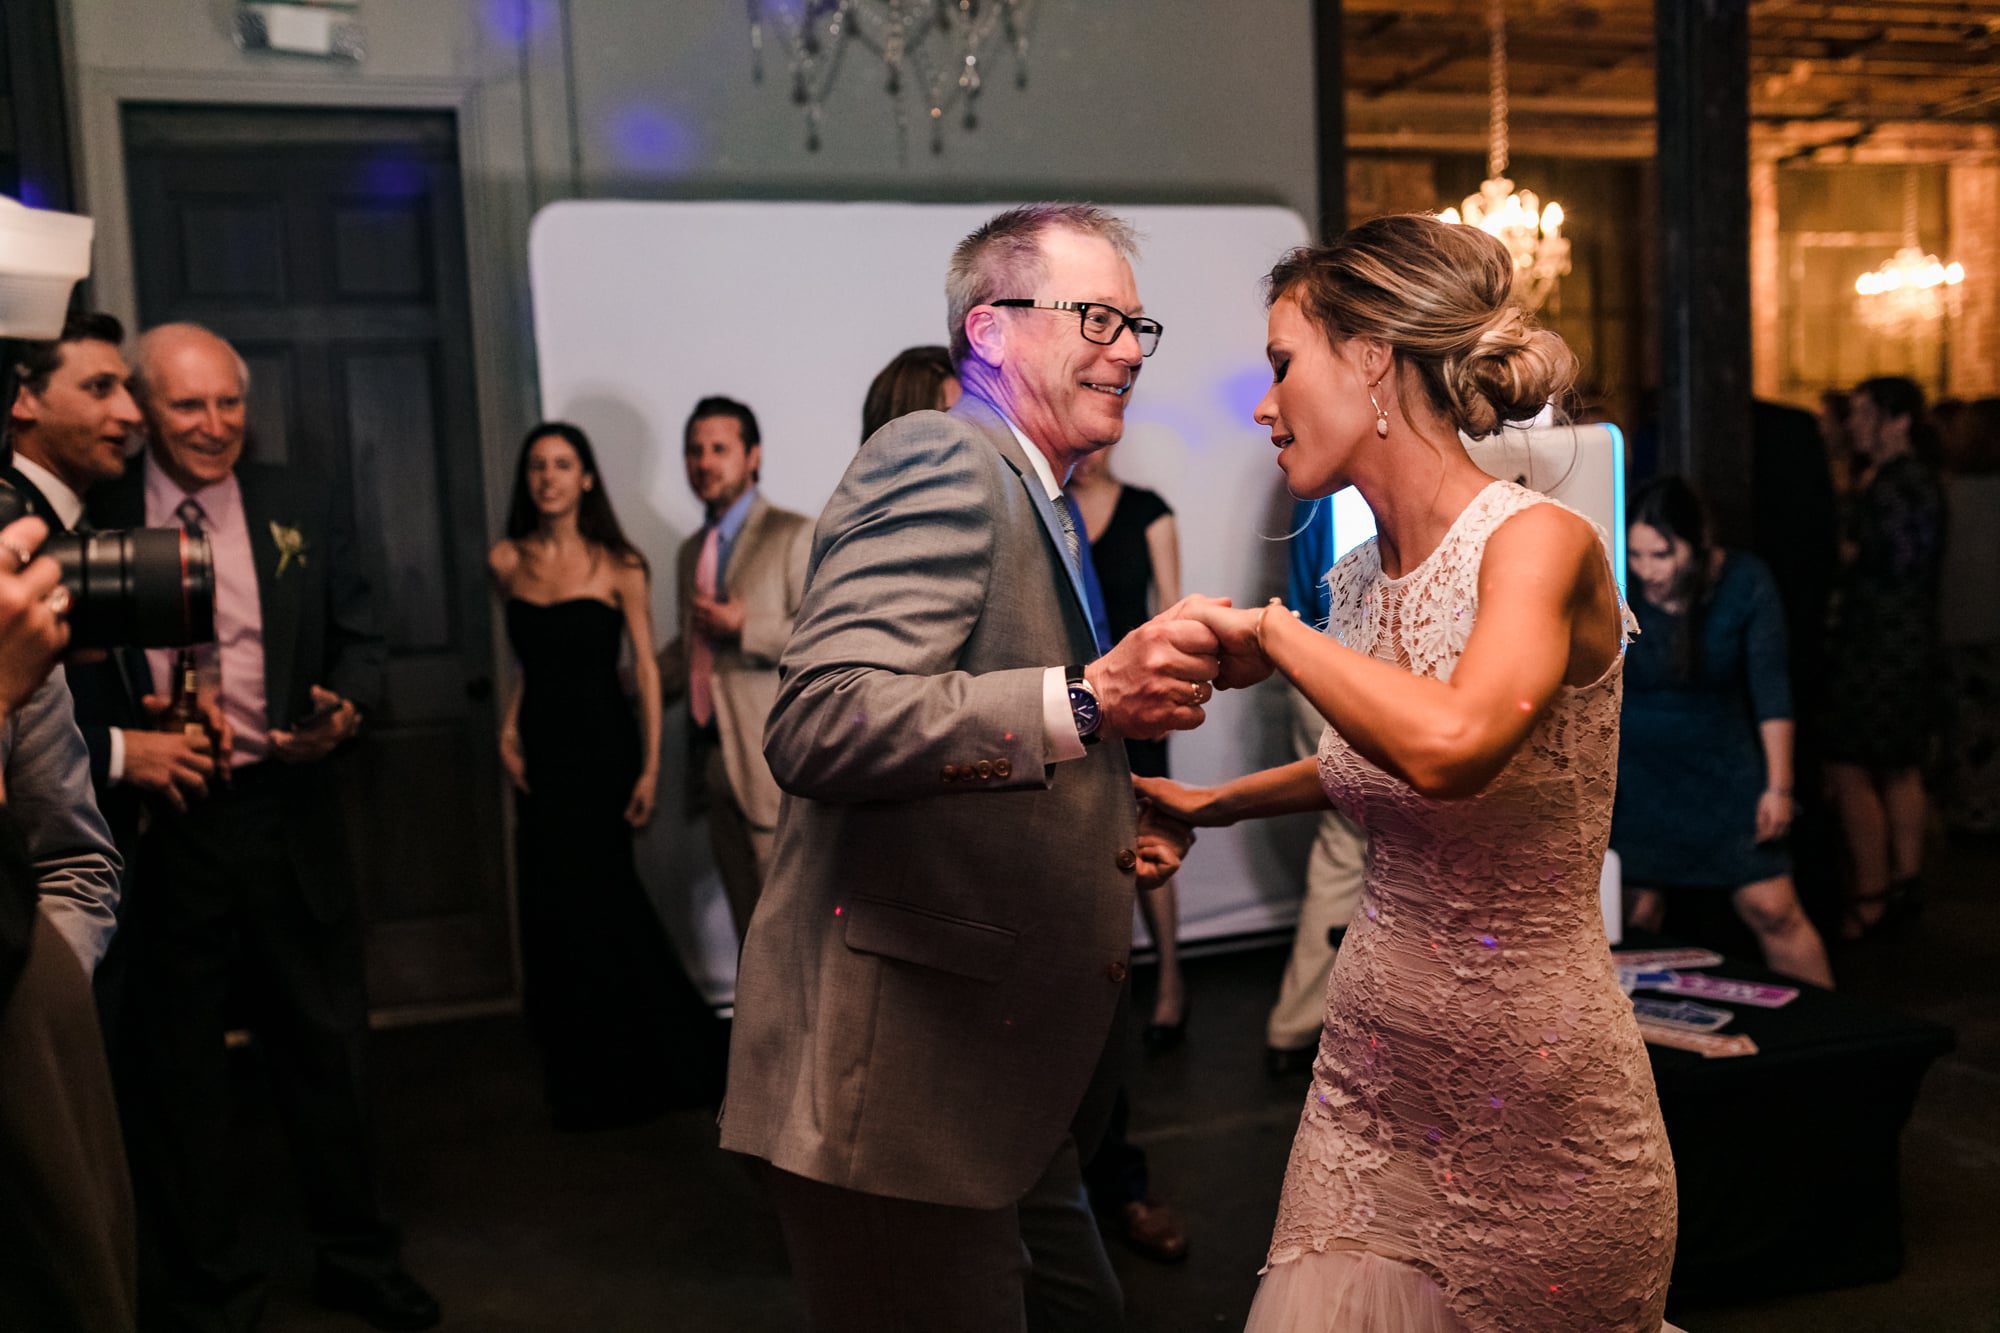 guests dancing, dancing photos, dance floor photos, candid dancing shots, reception dancing, bride dancing with dad, bride and dad on dancefloor